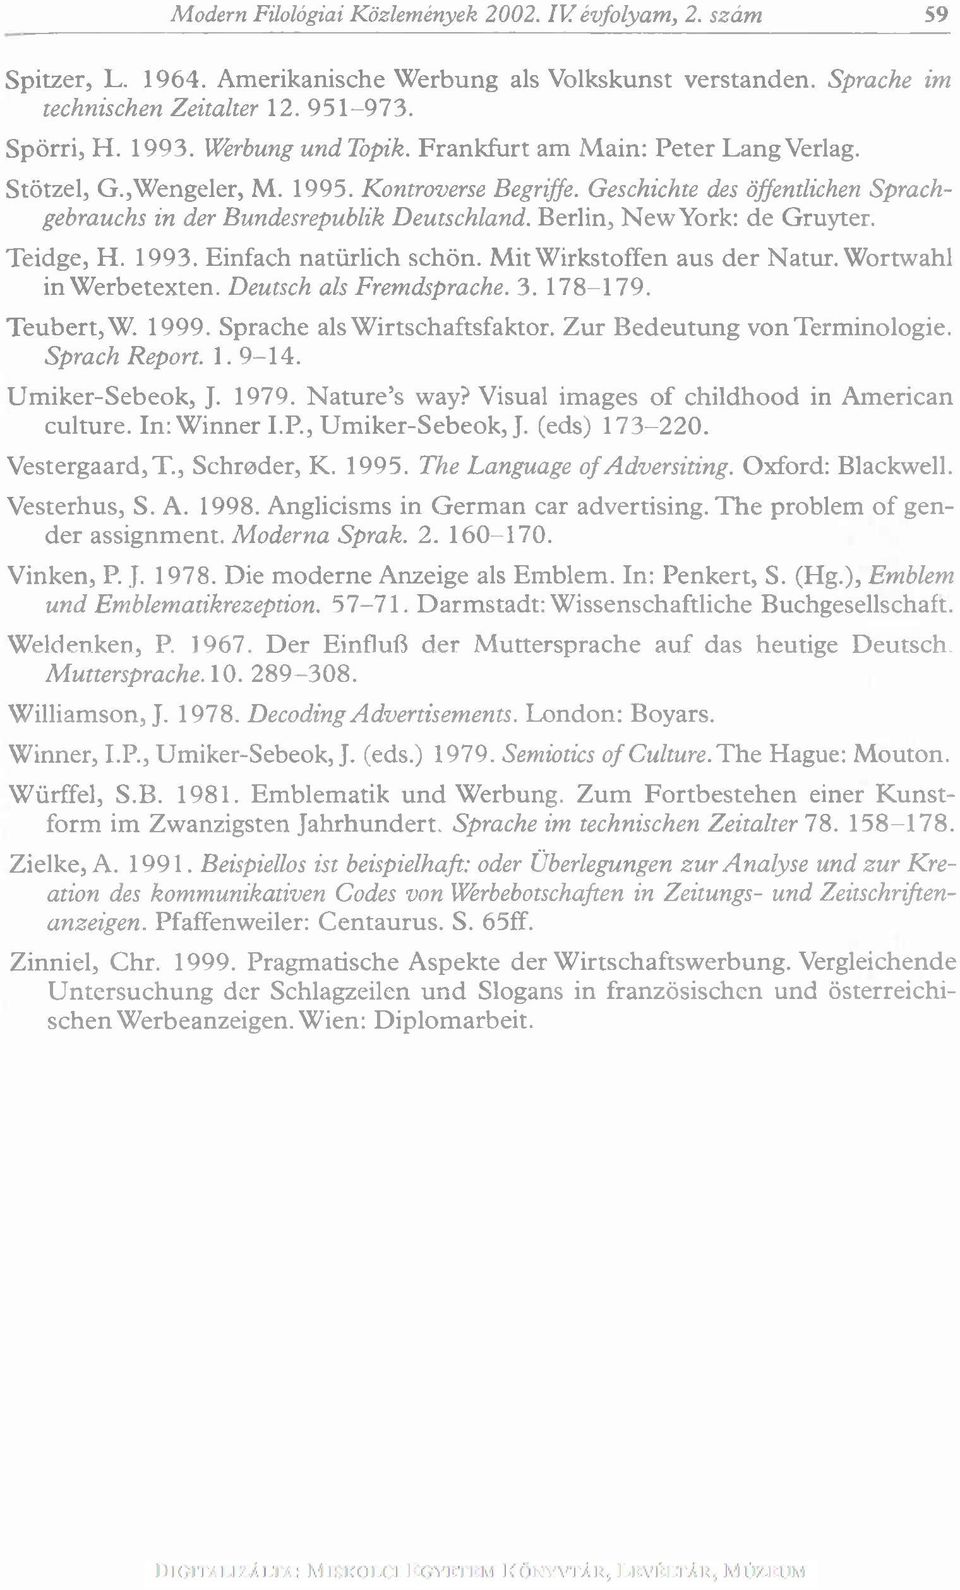 Berlin, N ew York: de G ruyter. Teidge, H. 1993. Einfach natürlich schön. M it W irkstoffen aus der N atur. W ortwahl in W erbetexten. Deutsch als Fremdsprache. 3. 178-179. Teubert,W. 1999.